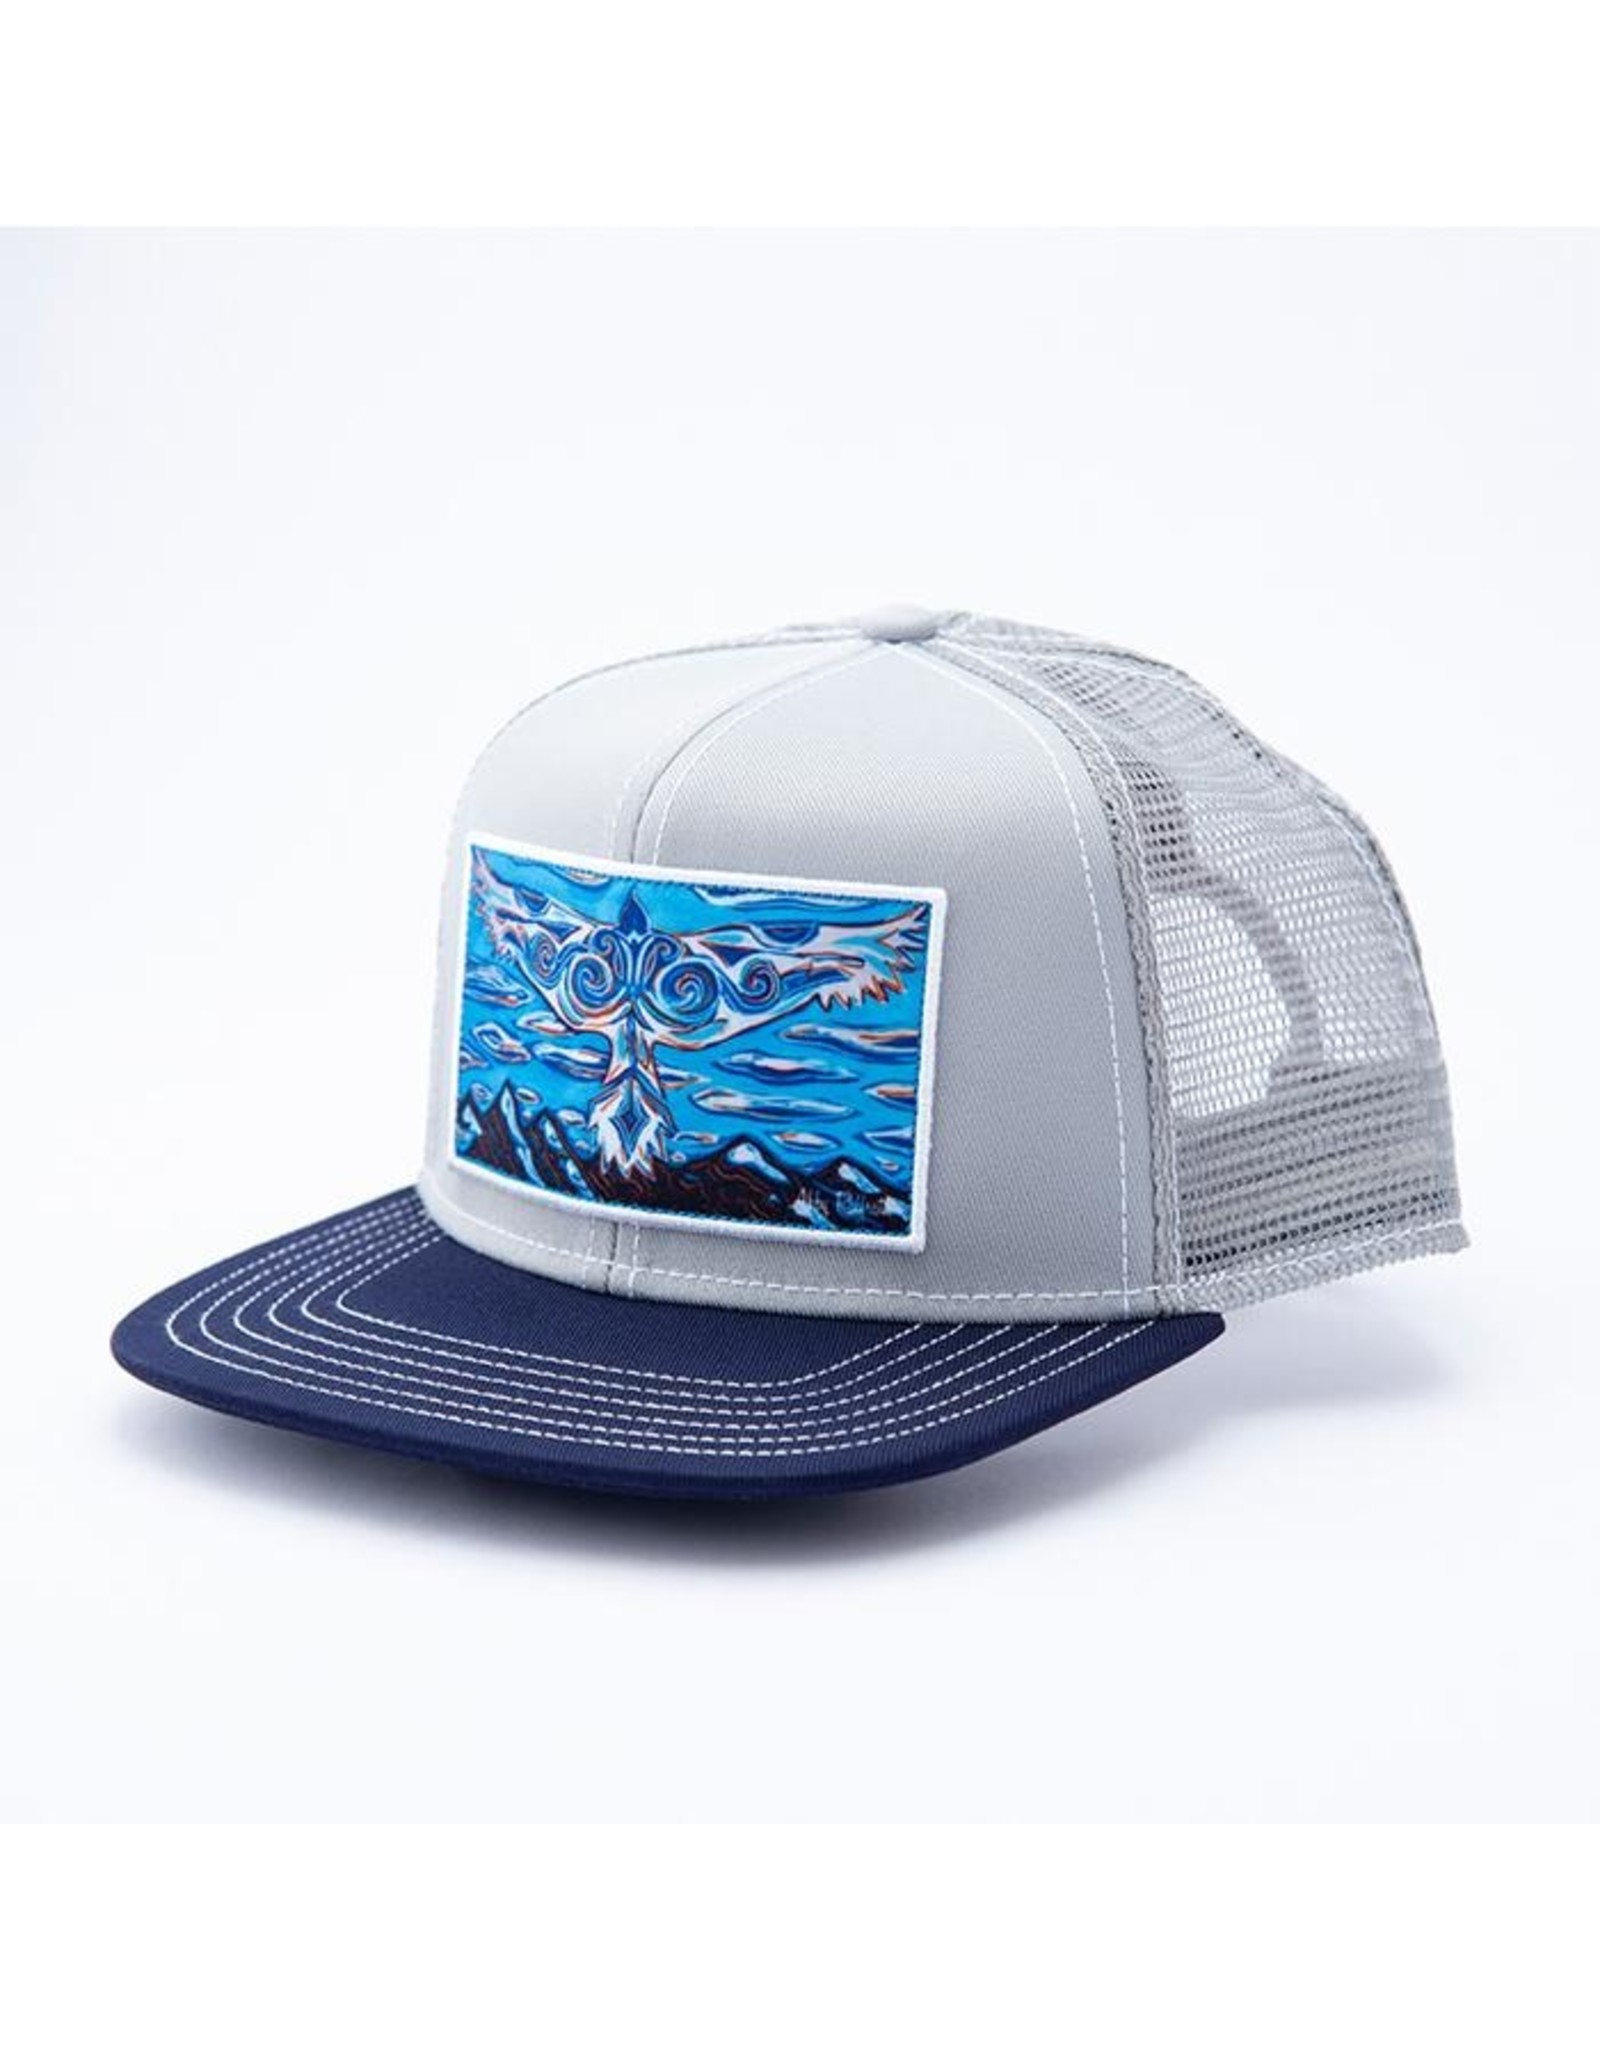 Art 4 All Art 4 All - A Blue Bird Wears the Sky Hat